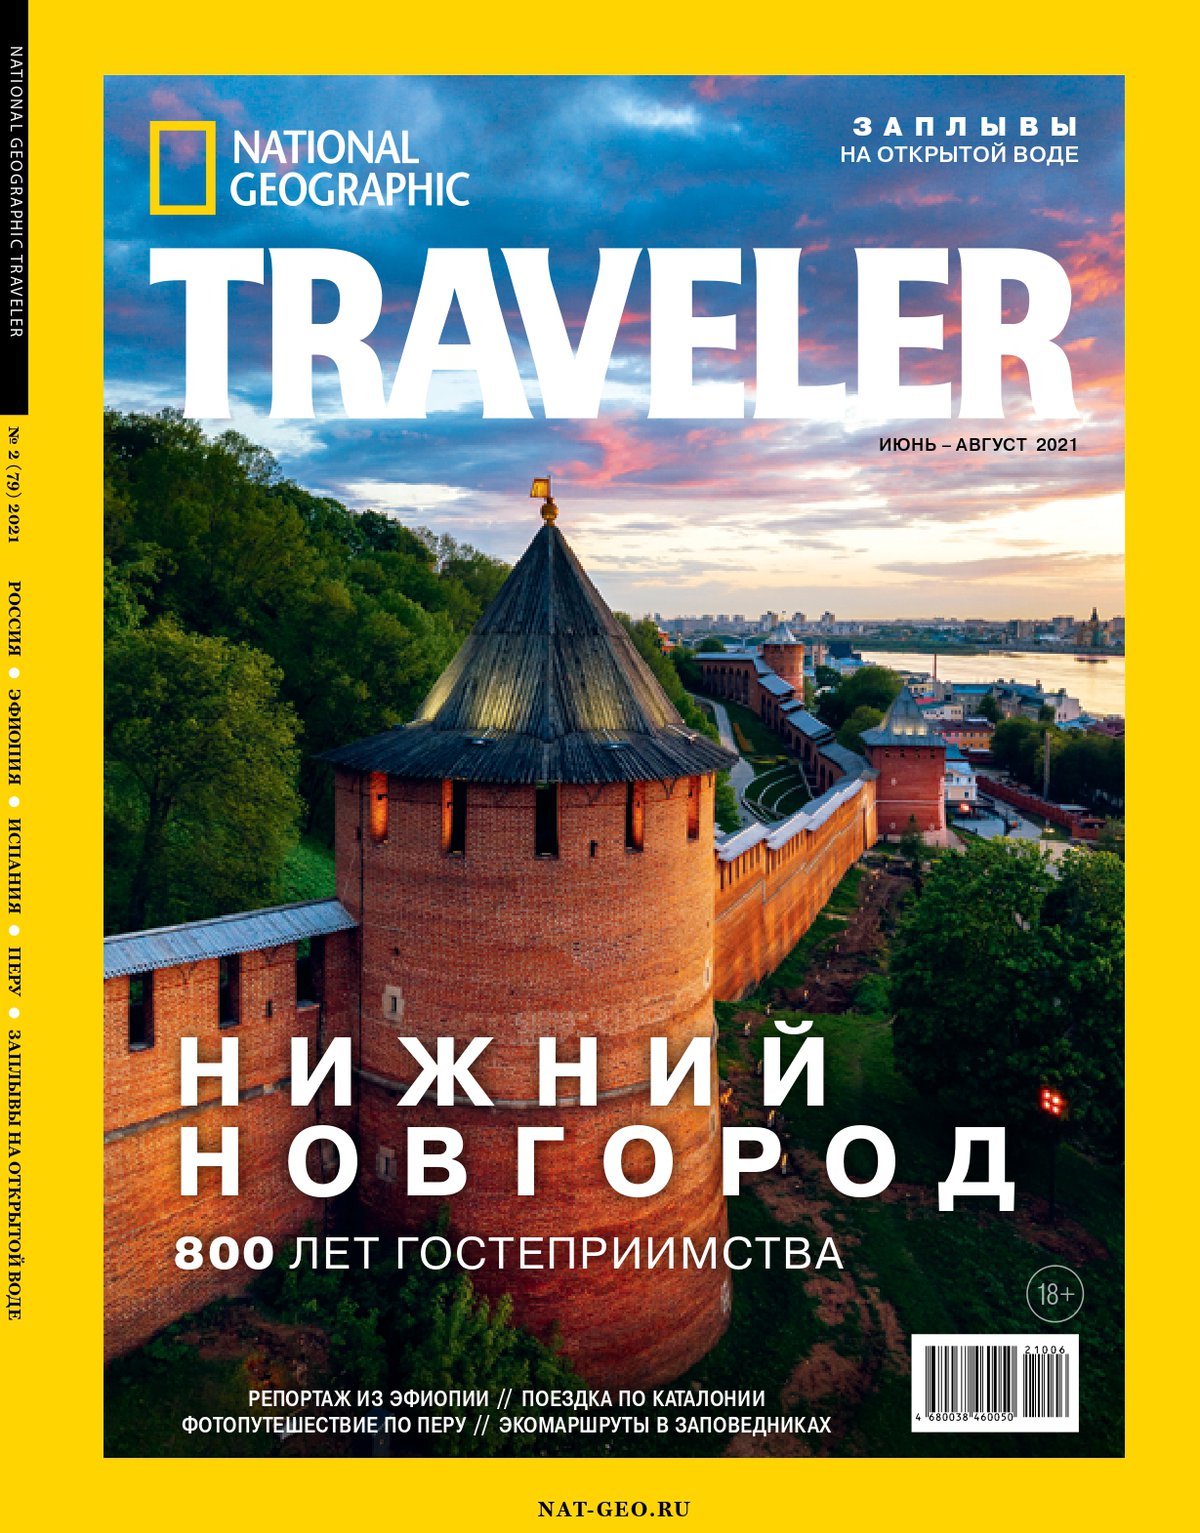 Борисоглебская башня Нижегородского кремля появилась на обложке National Geographic Traveler